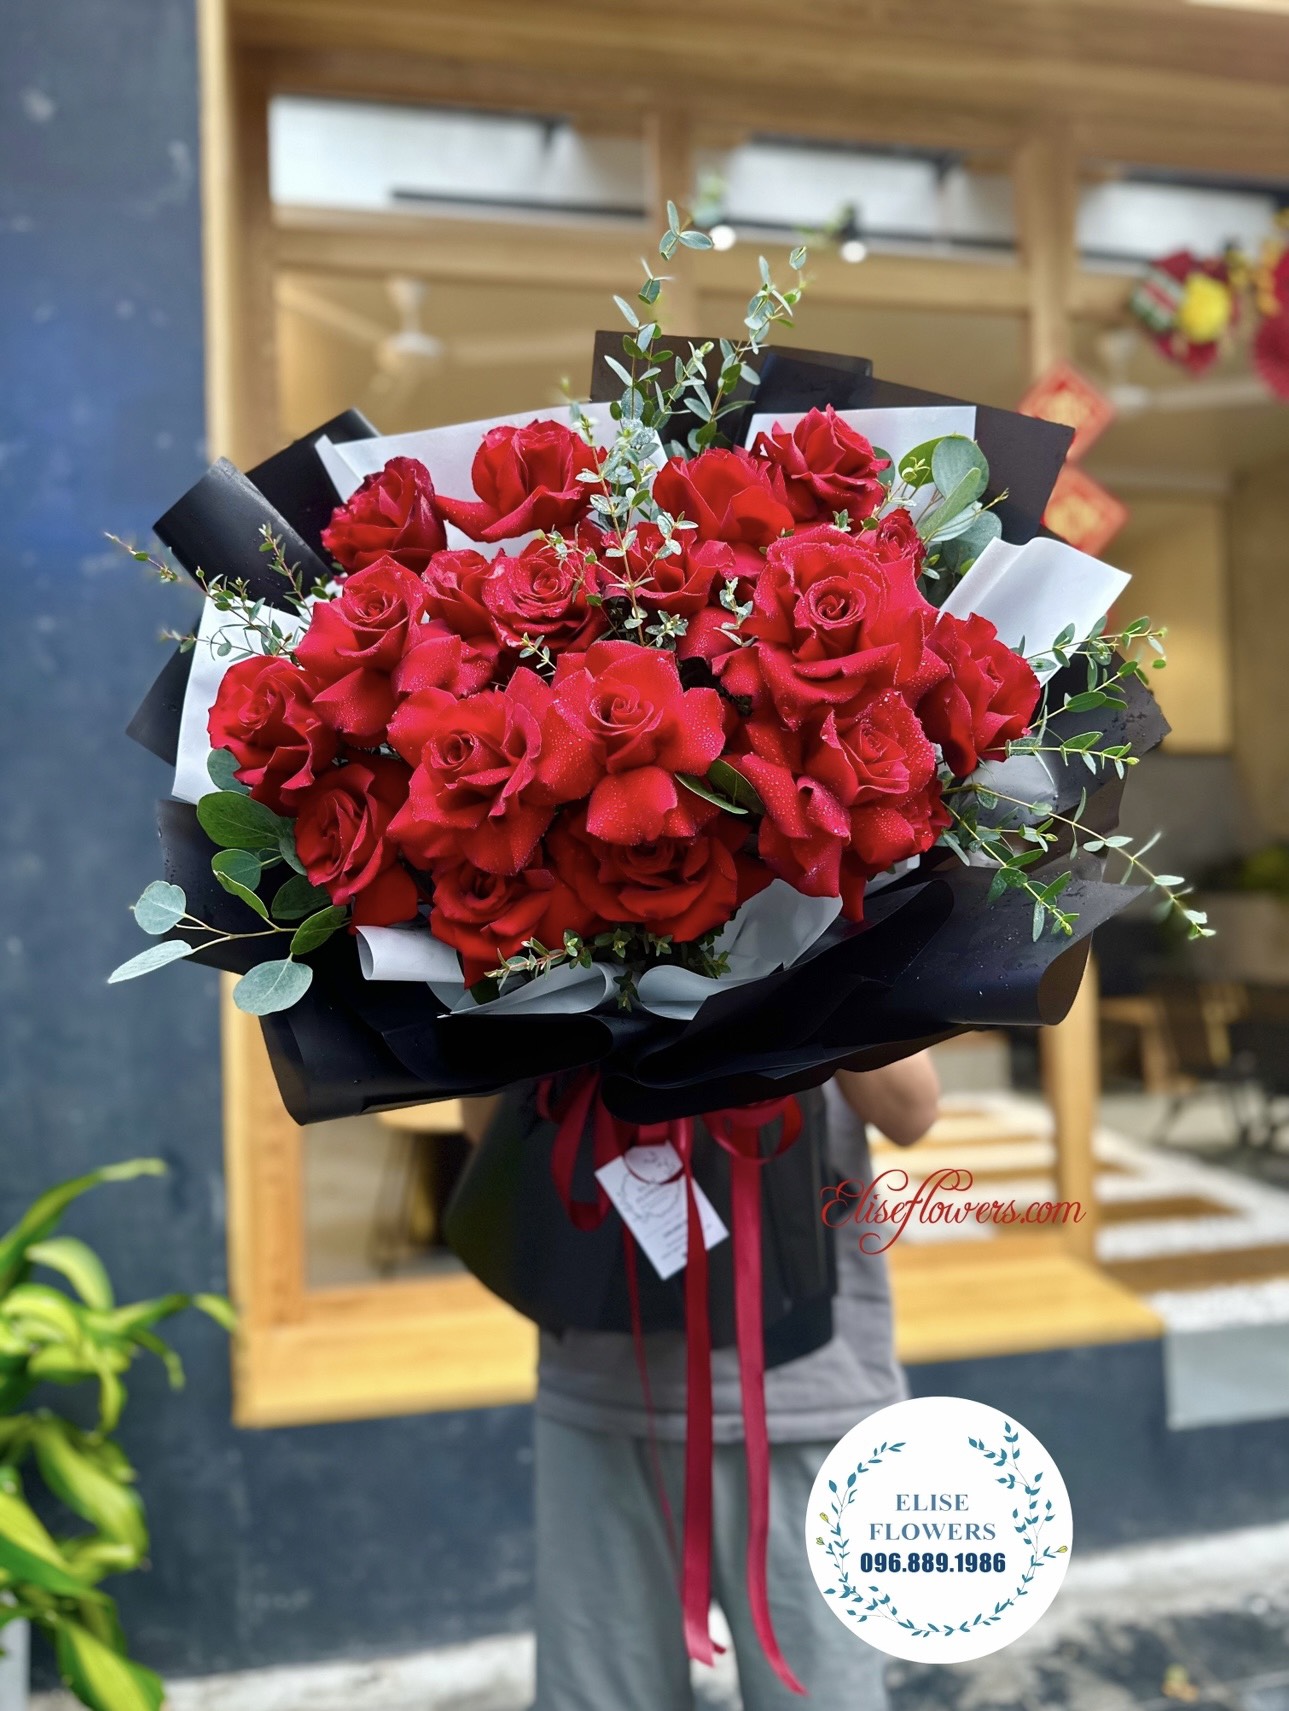 BO-HOA-HONG-DO-TANG-VO . Bó hoa hồng đỏ tặng VỢ YÊU ngày 8/3. HOA 8/3.